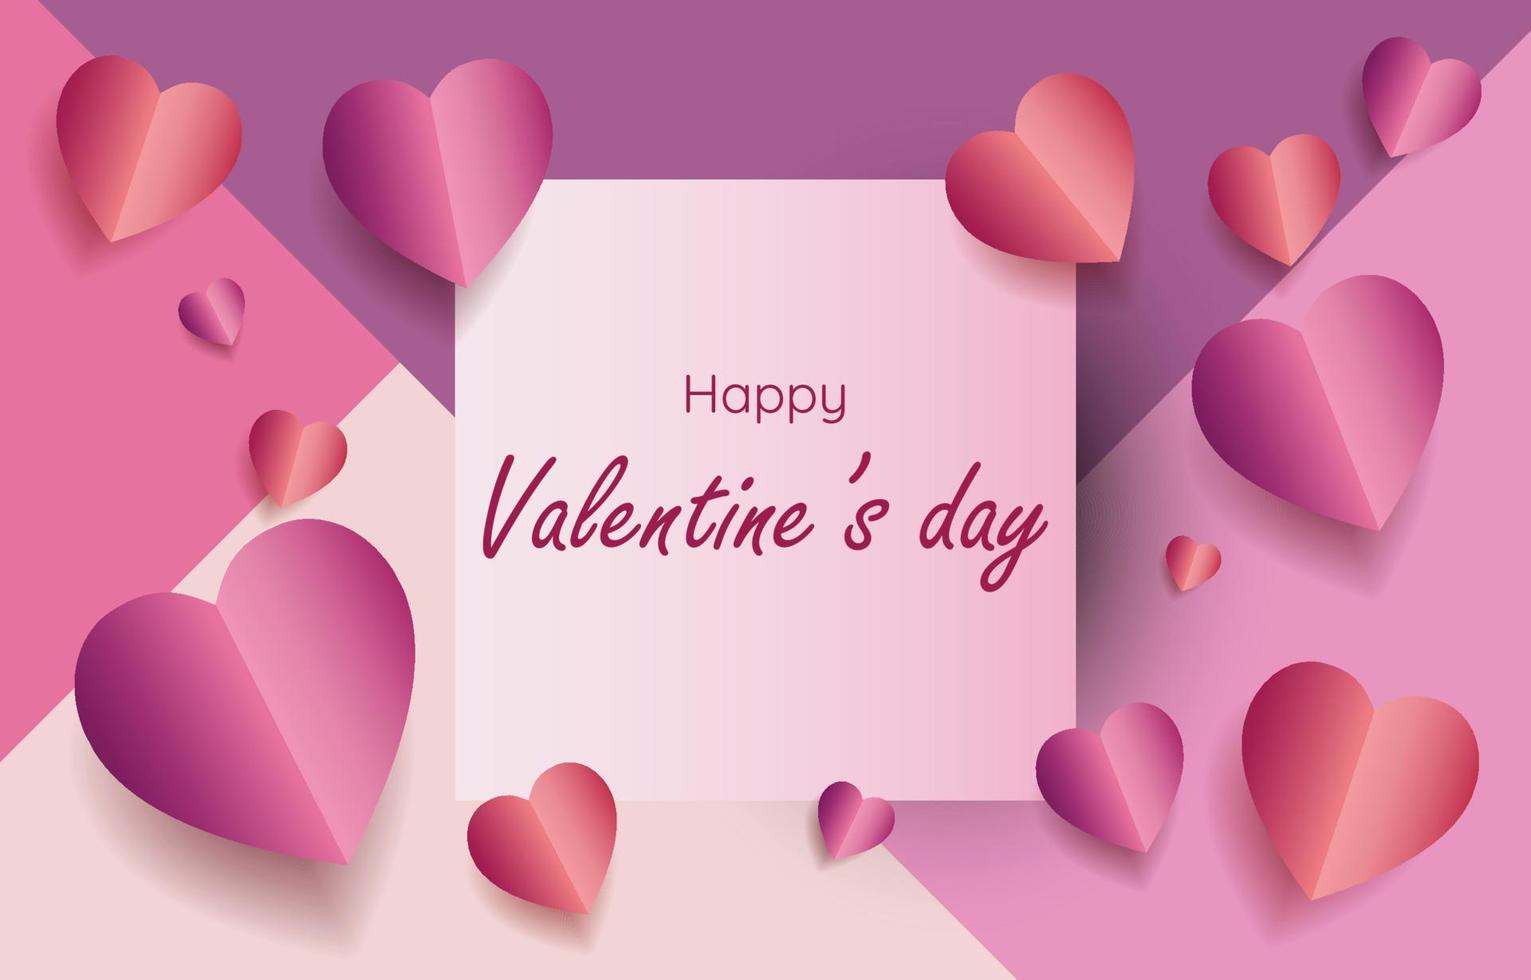 elementi tagliati in carta a forma di cuore con cornice quadrata con sfondo rosa e dolce di auguri. simboli vettoriali d'amore per il giorno di San Valentino felice, disegno della cartolina d'auguri.